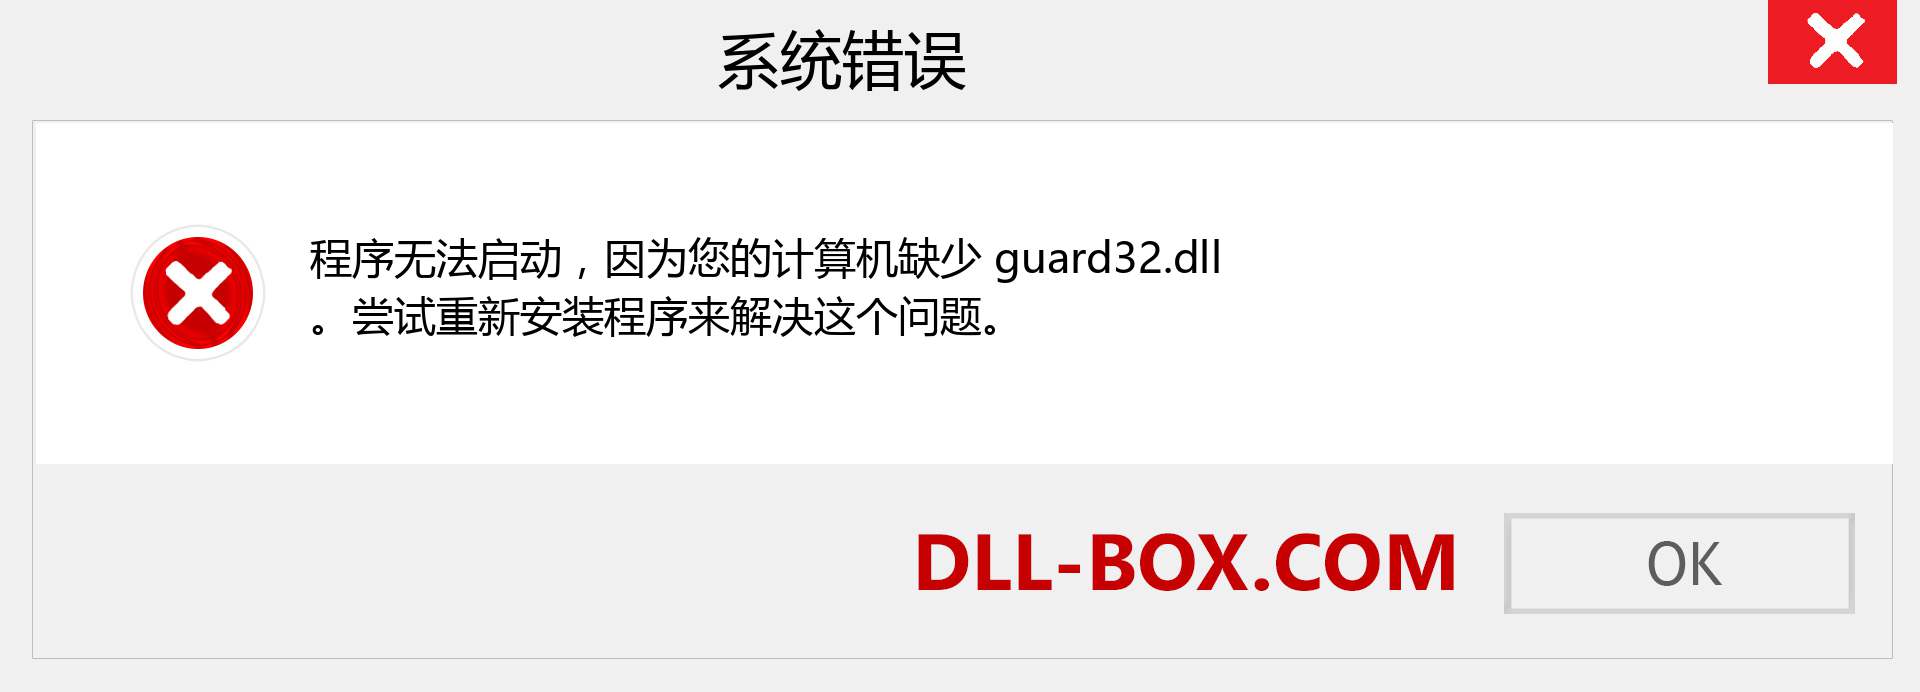 guard32.dll 文件丢失？。 适用于 Windows 7、8、10 的下载 - 修复 Windows、照片、图像上的 guard32 dll 丢失错误